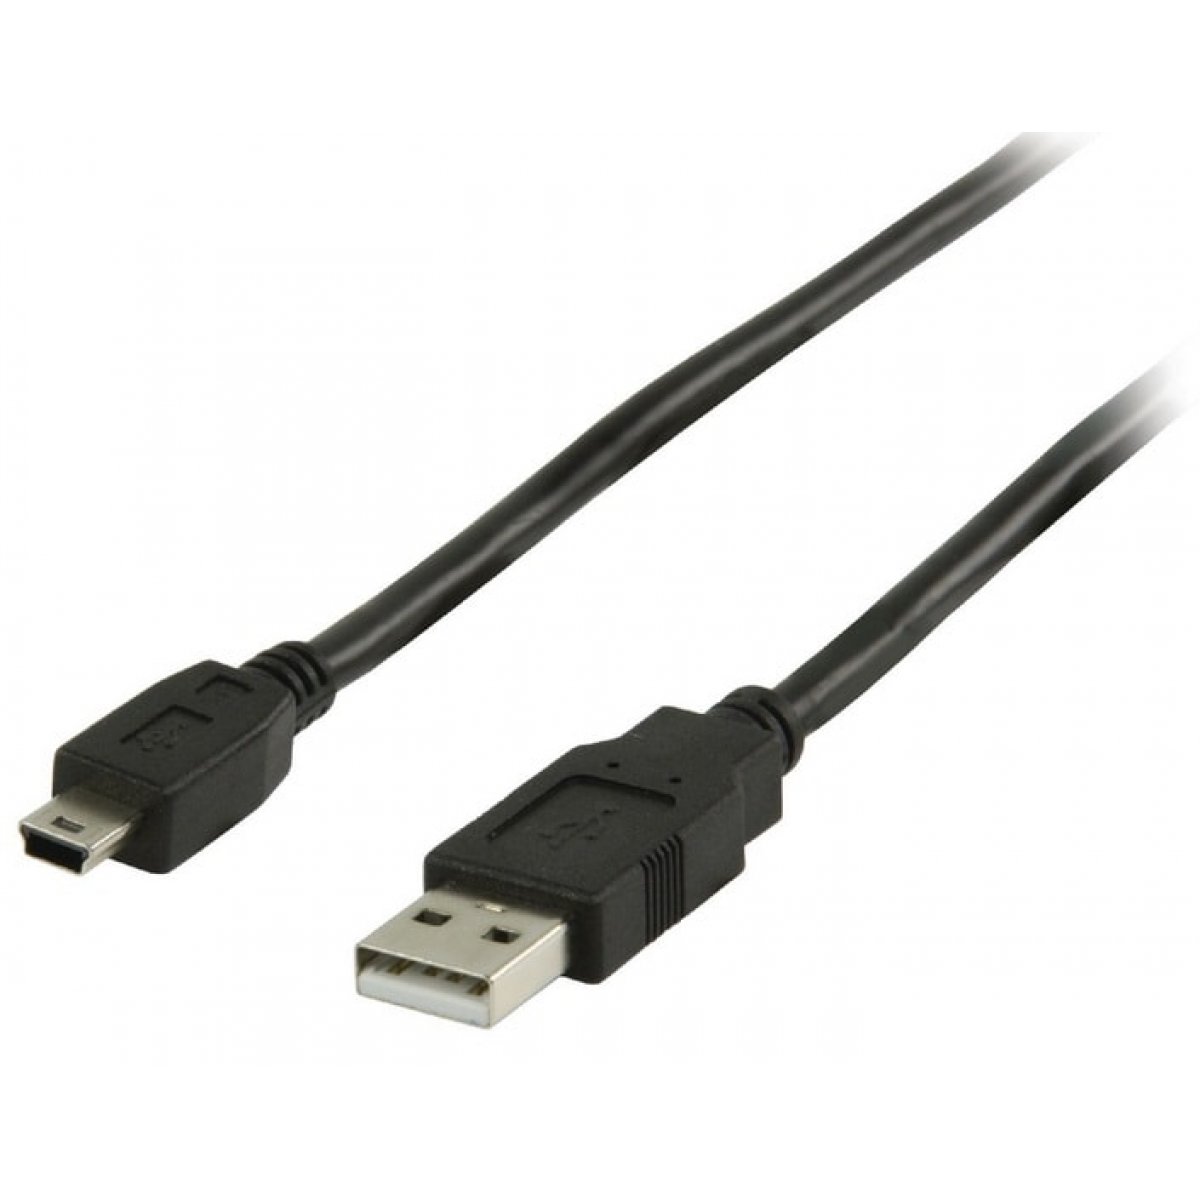 CABLE USB A/M - MINI USB B/M (5P) (5M) NEGRO